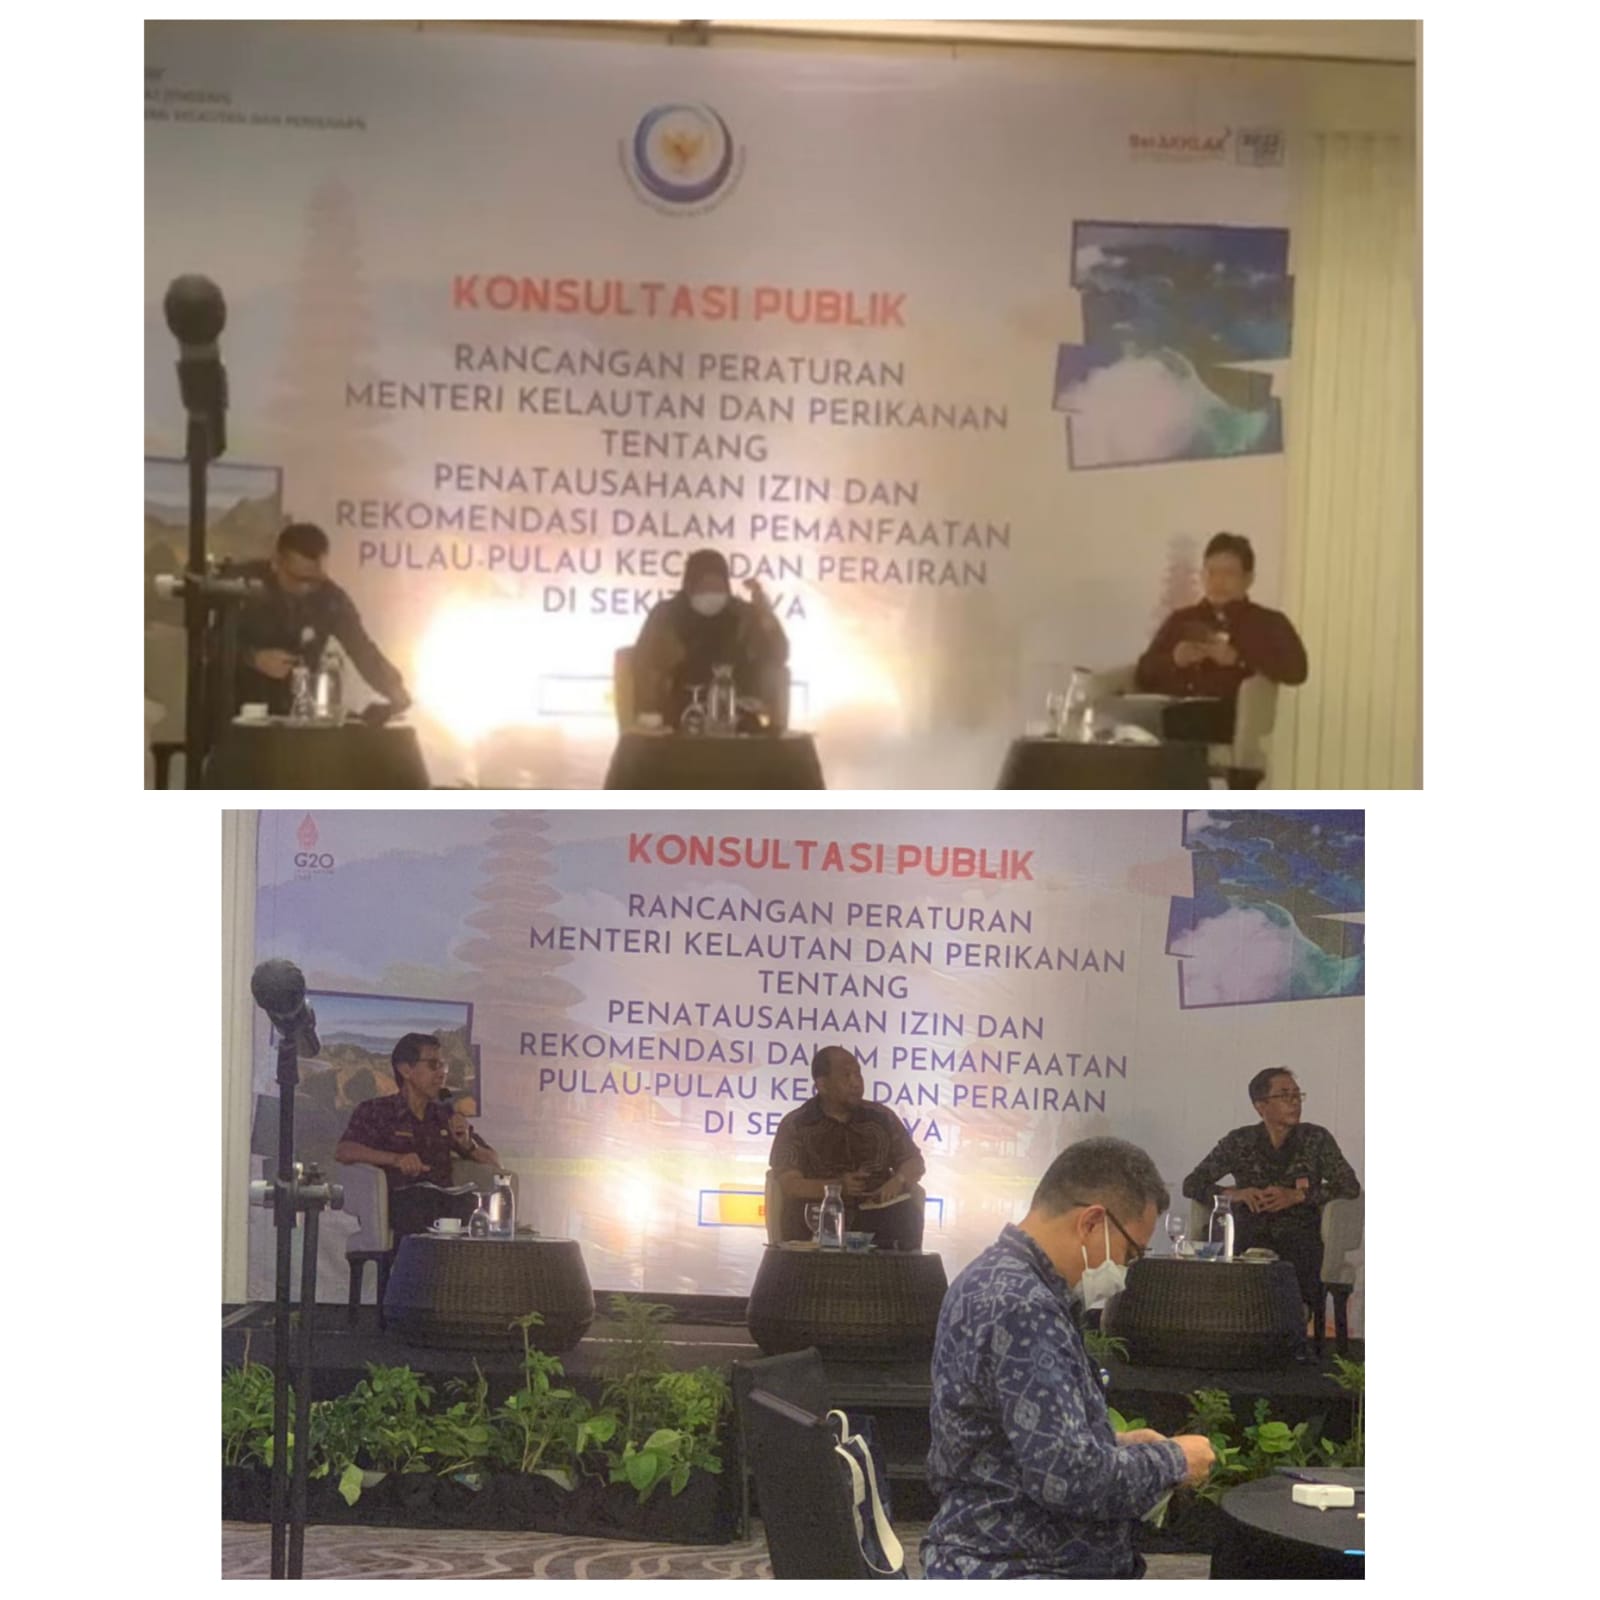 Akademisi Fakultas Hukum UNUD Menghadiri Konsultasi Publik Oleh Sekretariat Jenderal Kementerian Kelautan dan Perikanan Republik Indonesia